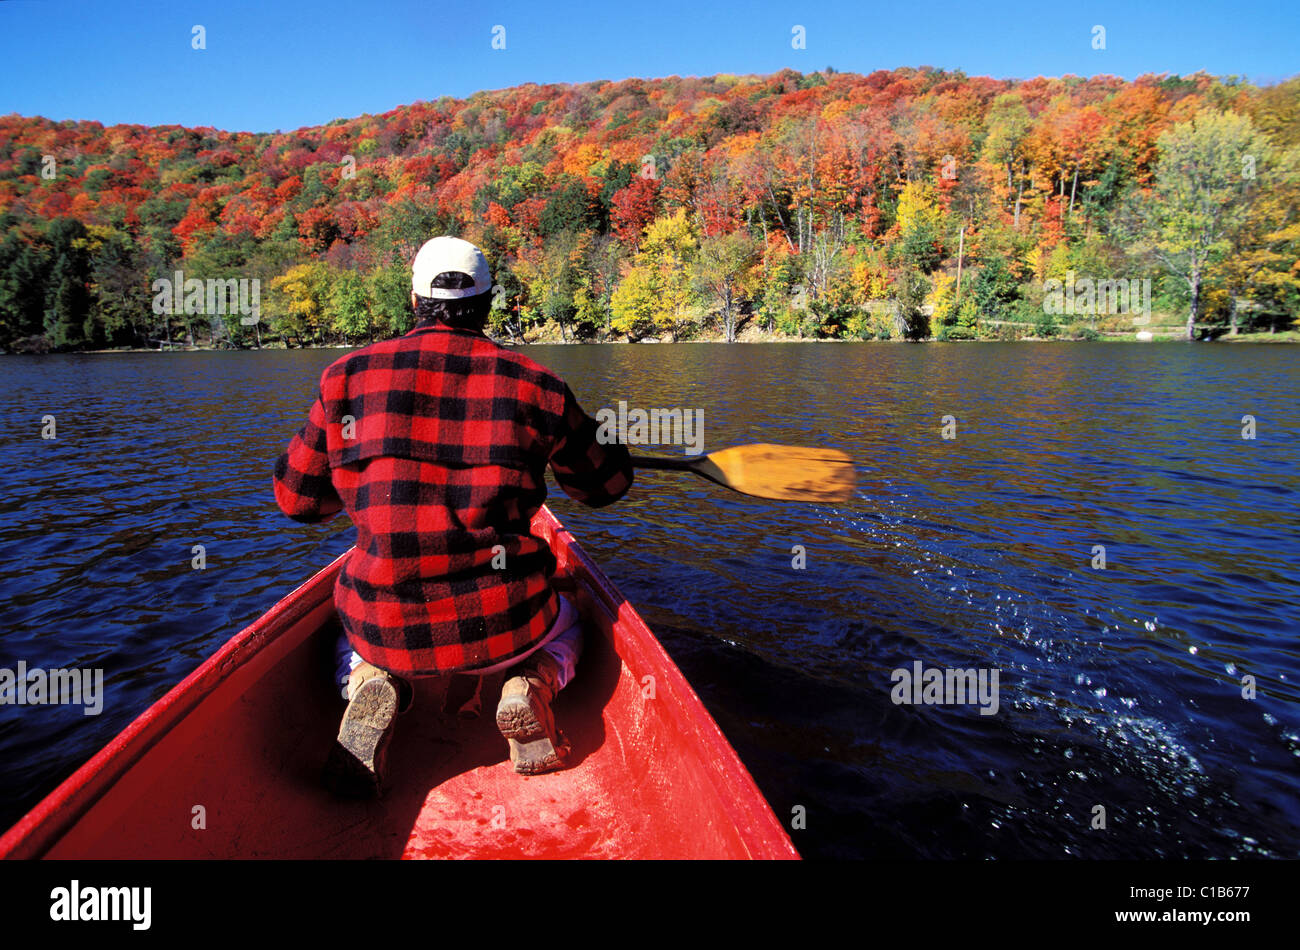 Le Canada, la Province du Québec, la Mauricie, le canoë sur un lac au cours de l'Été Indien Banque D'Images